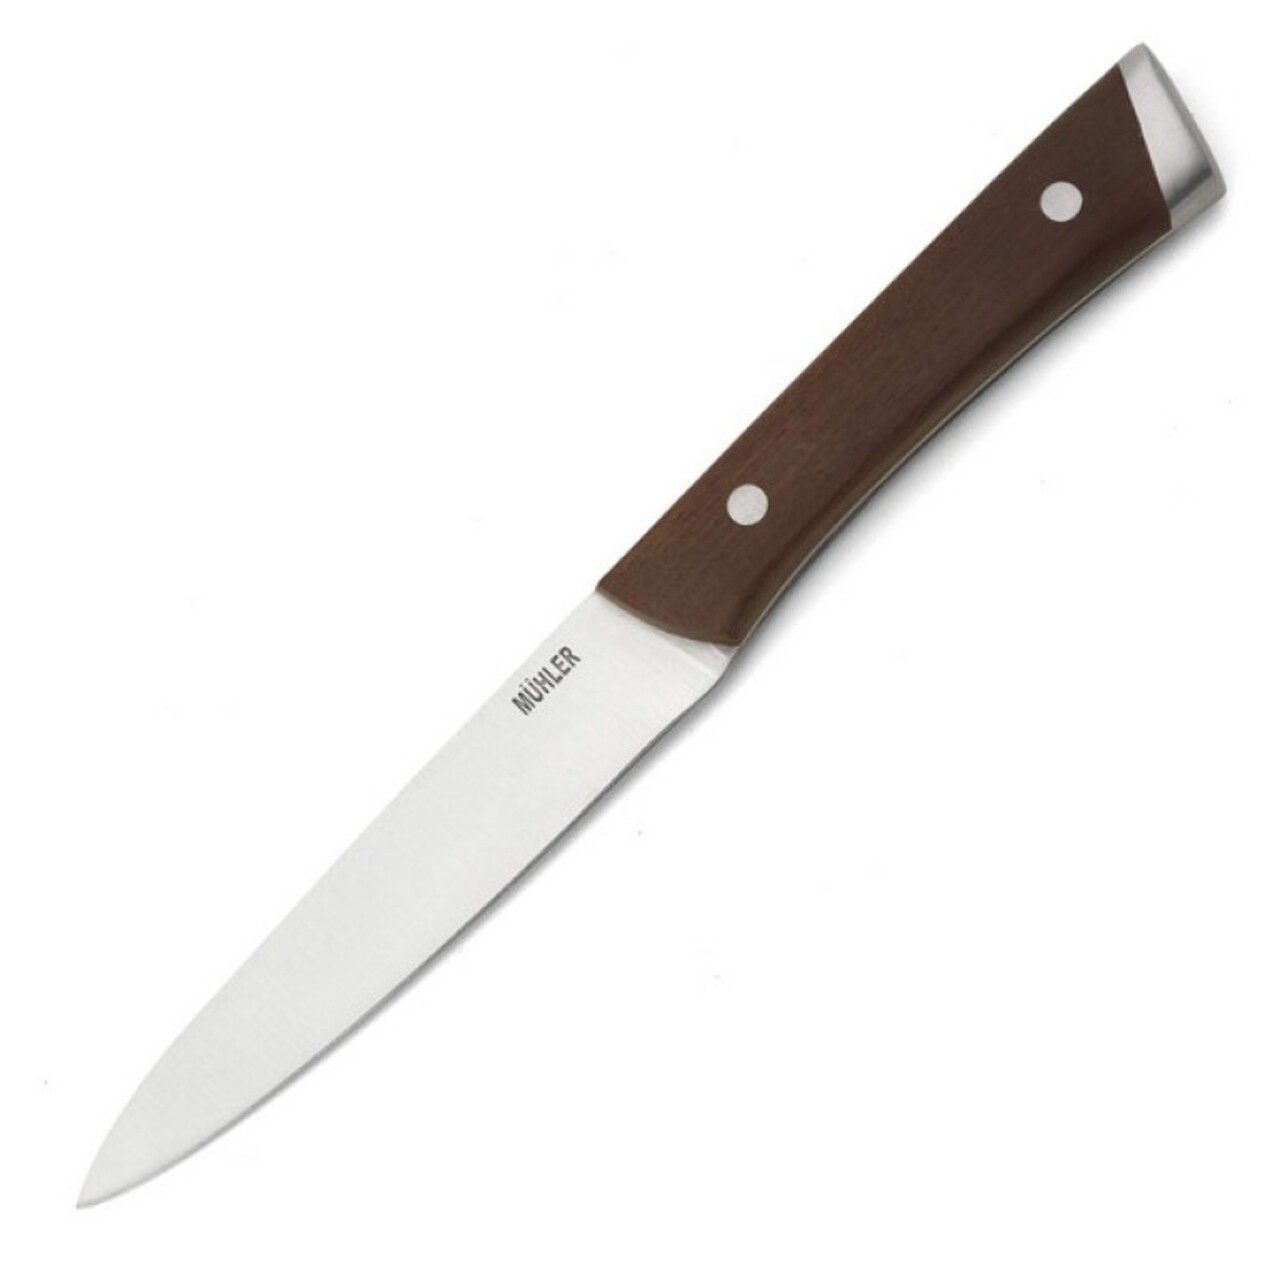 Muhler használati kés, MR-25013SS, 13 cm, rozsdamentes acél / kőris fa